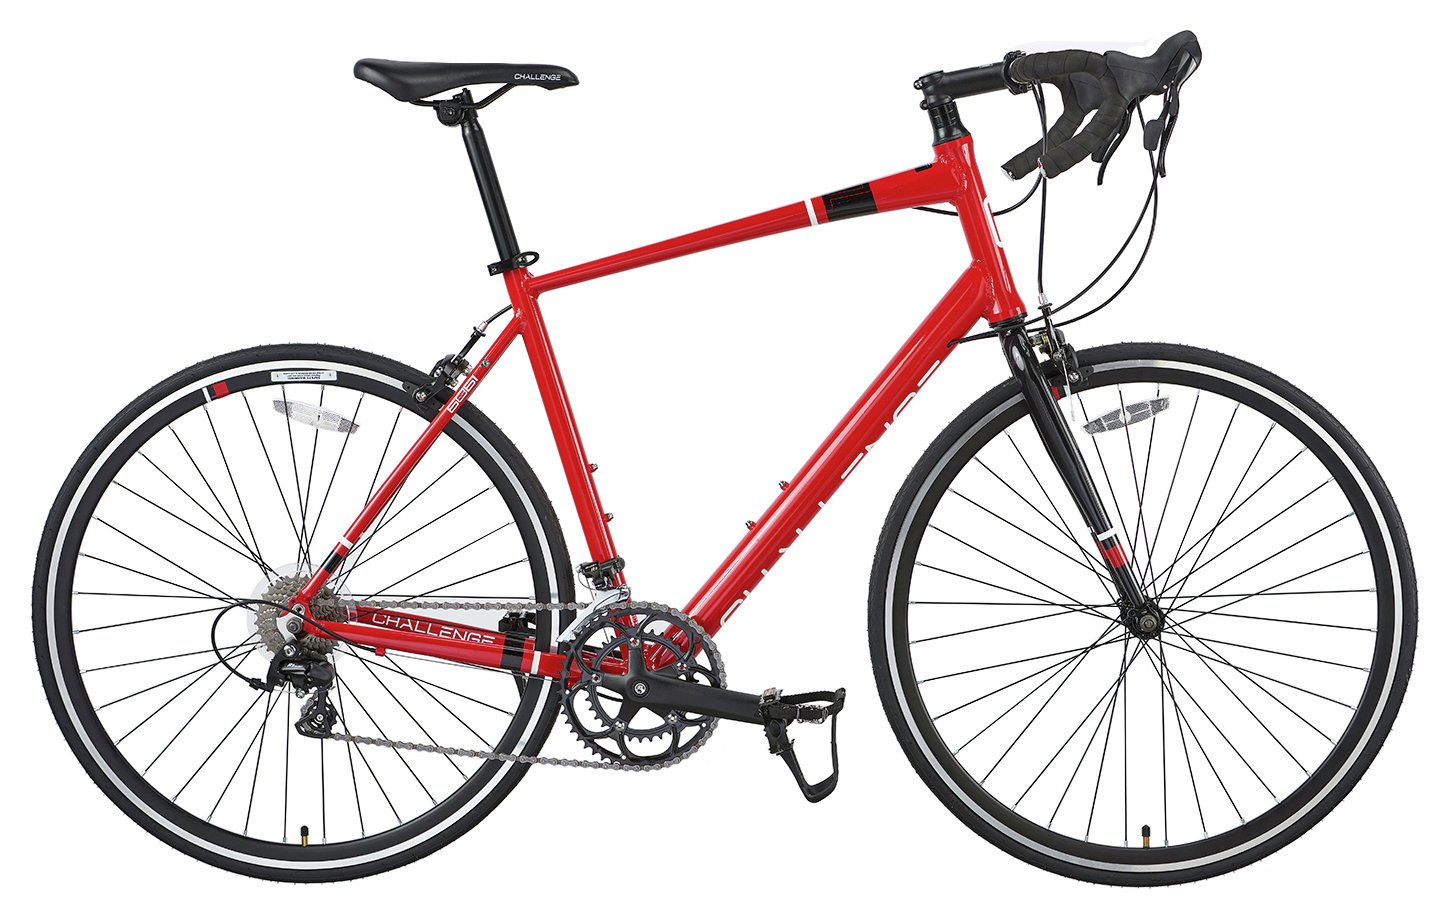 Challenge Plus CLR 0.1 700C Wheel Size Unisex Road Bike Review